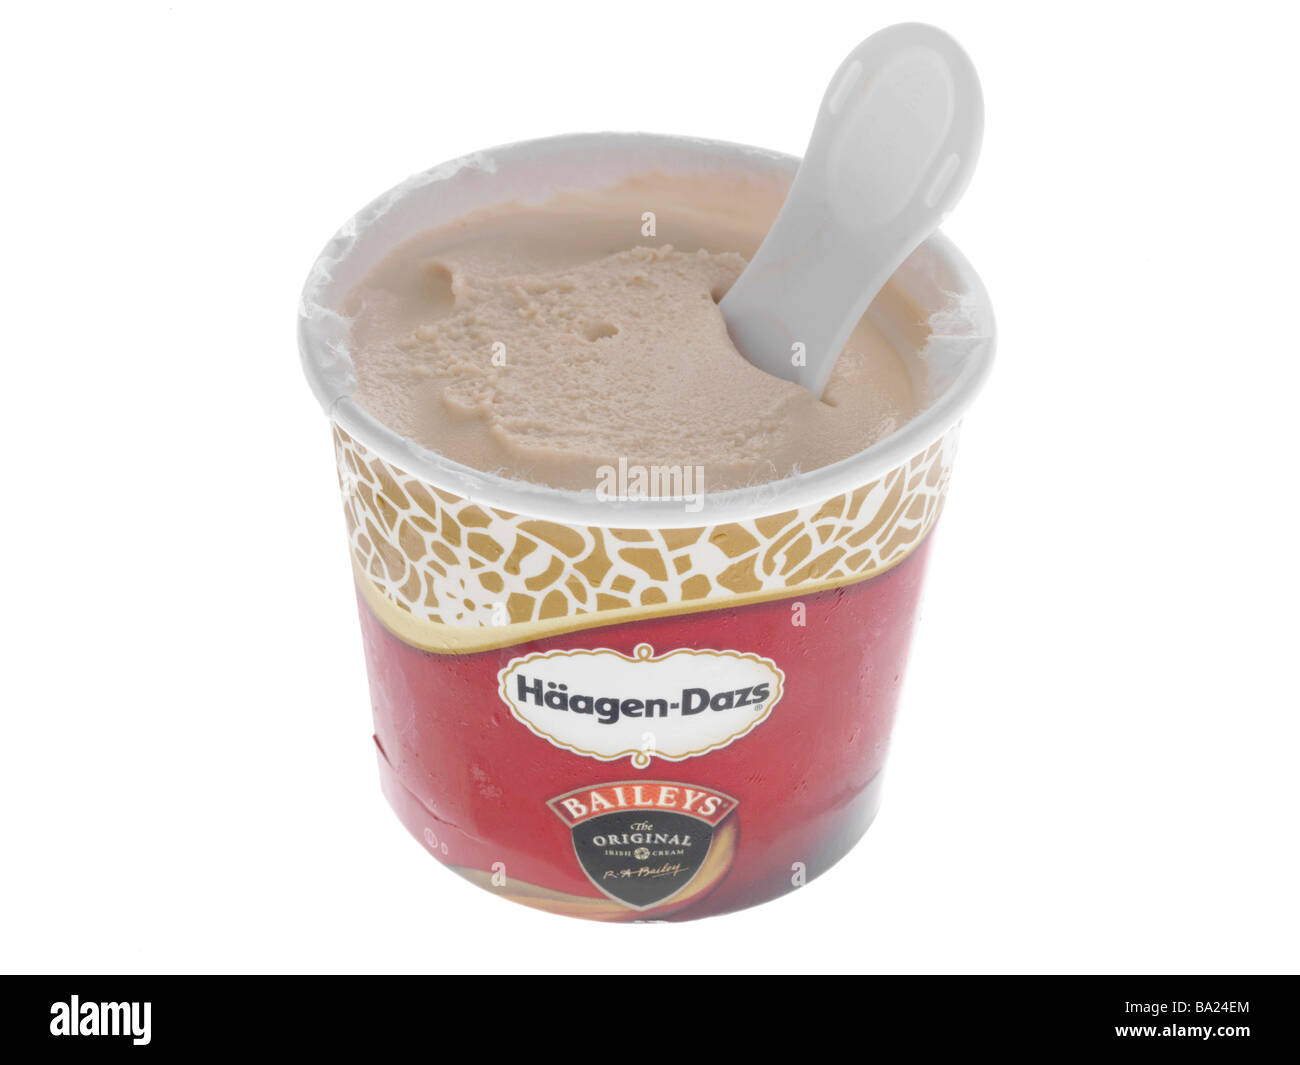 Haagen dazs ice cream Banque d'images détourées - Alamy